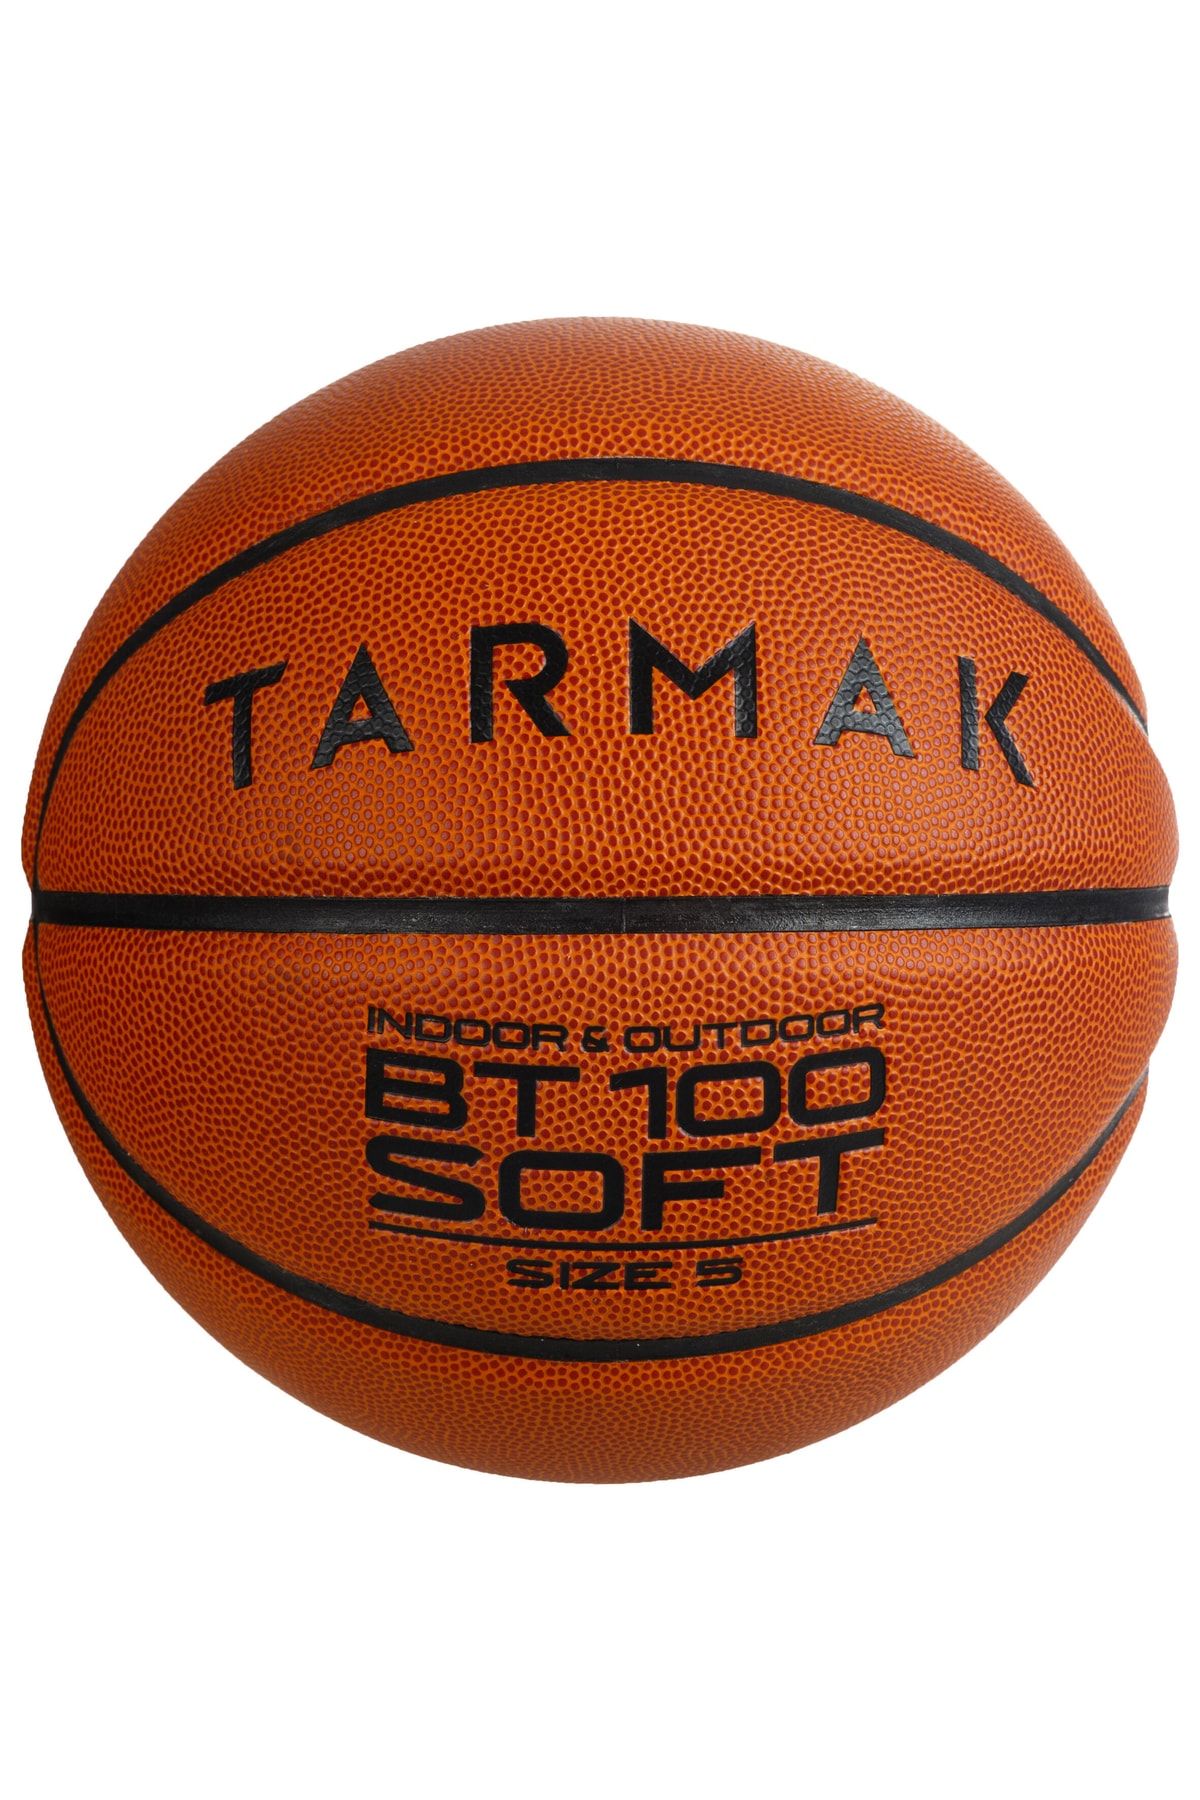 Decathlon Tarmak Basketbol Topu - 5 Numara - Bt100